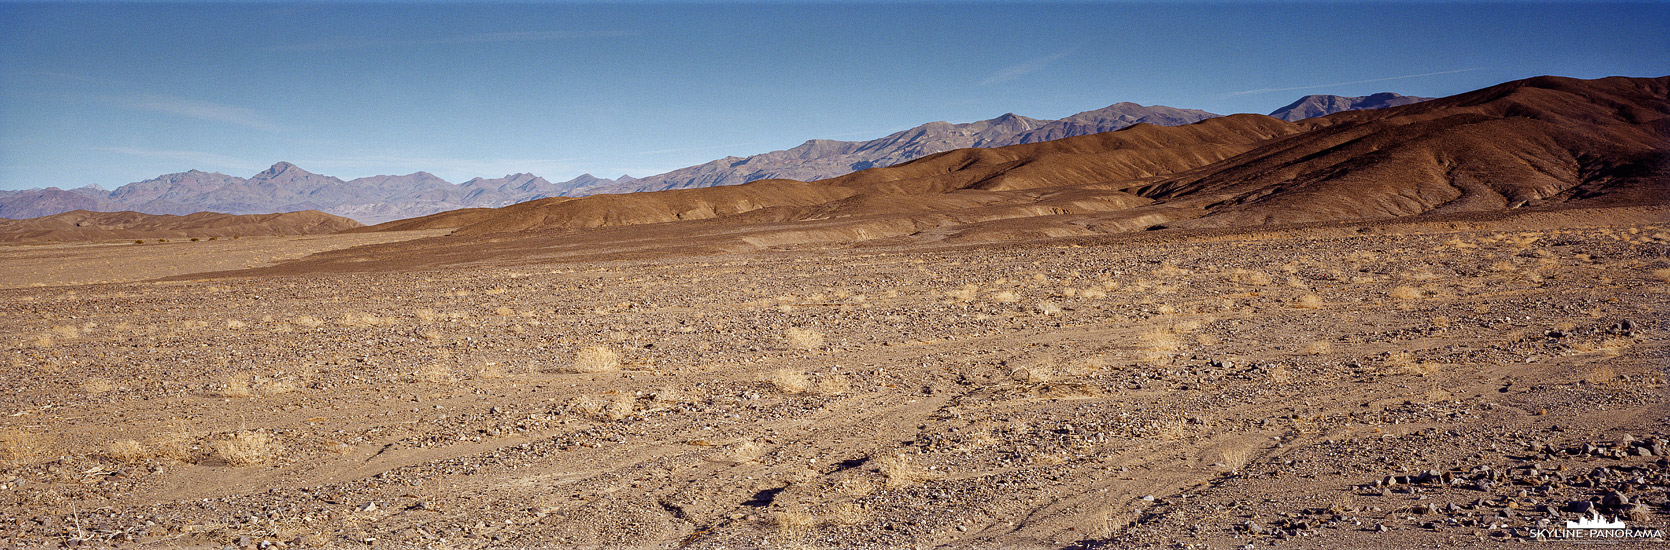 Death Valley Panorama - Steinwüste (p_01219)